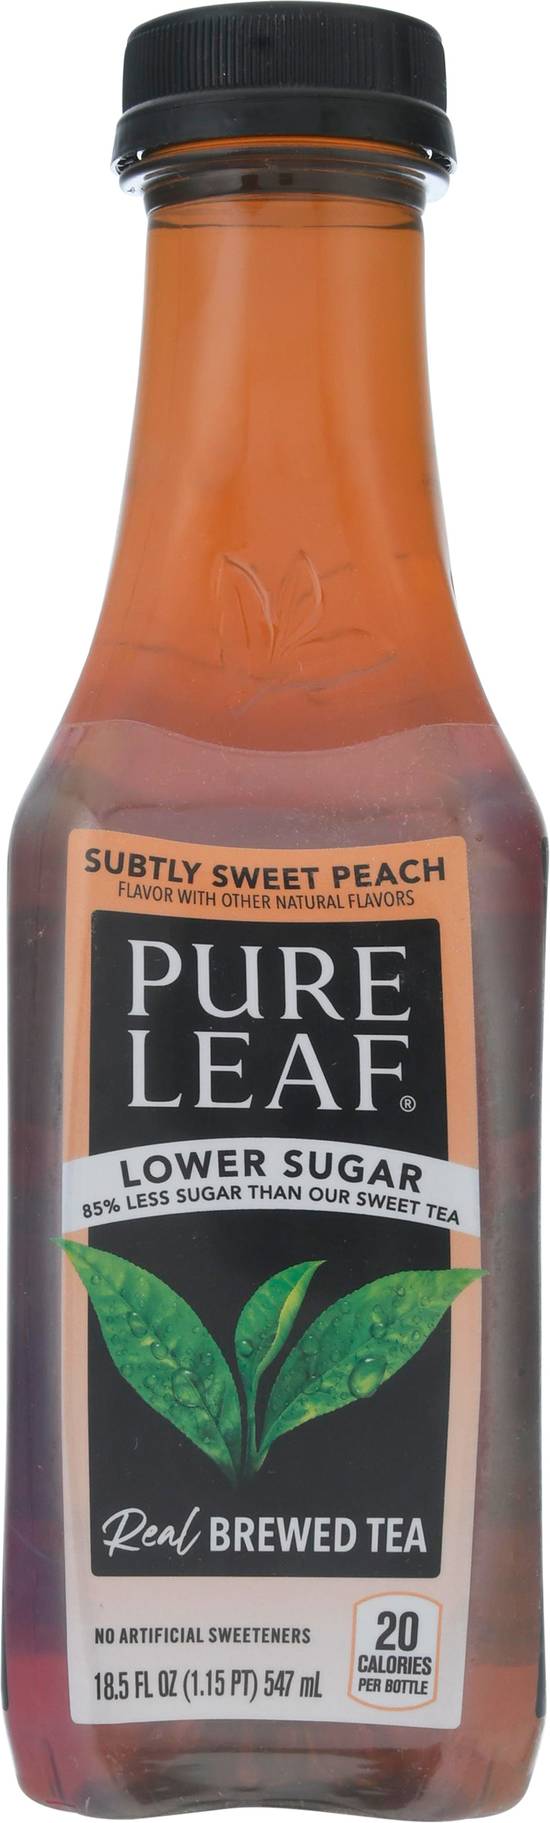 Pure Leaf Lower Sugar Subtly Sweet Peach Brewed Tea (18.5 fl oz)